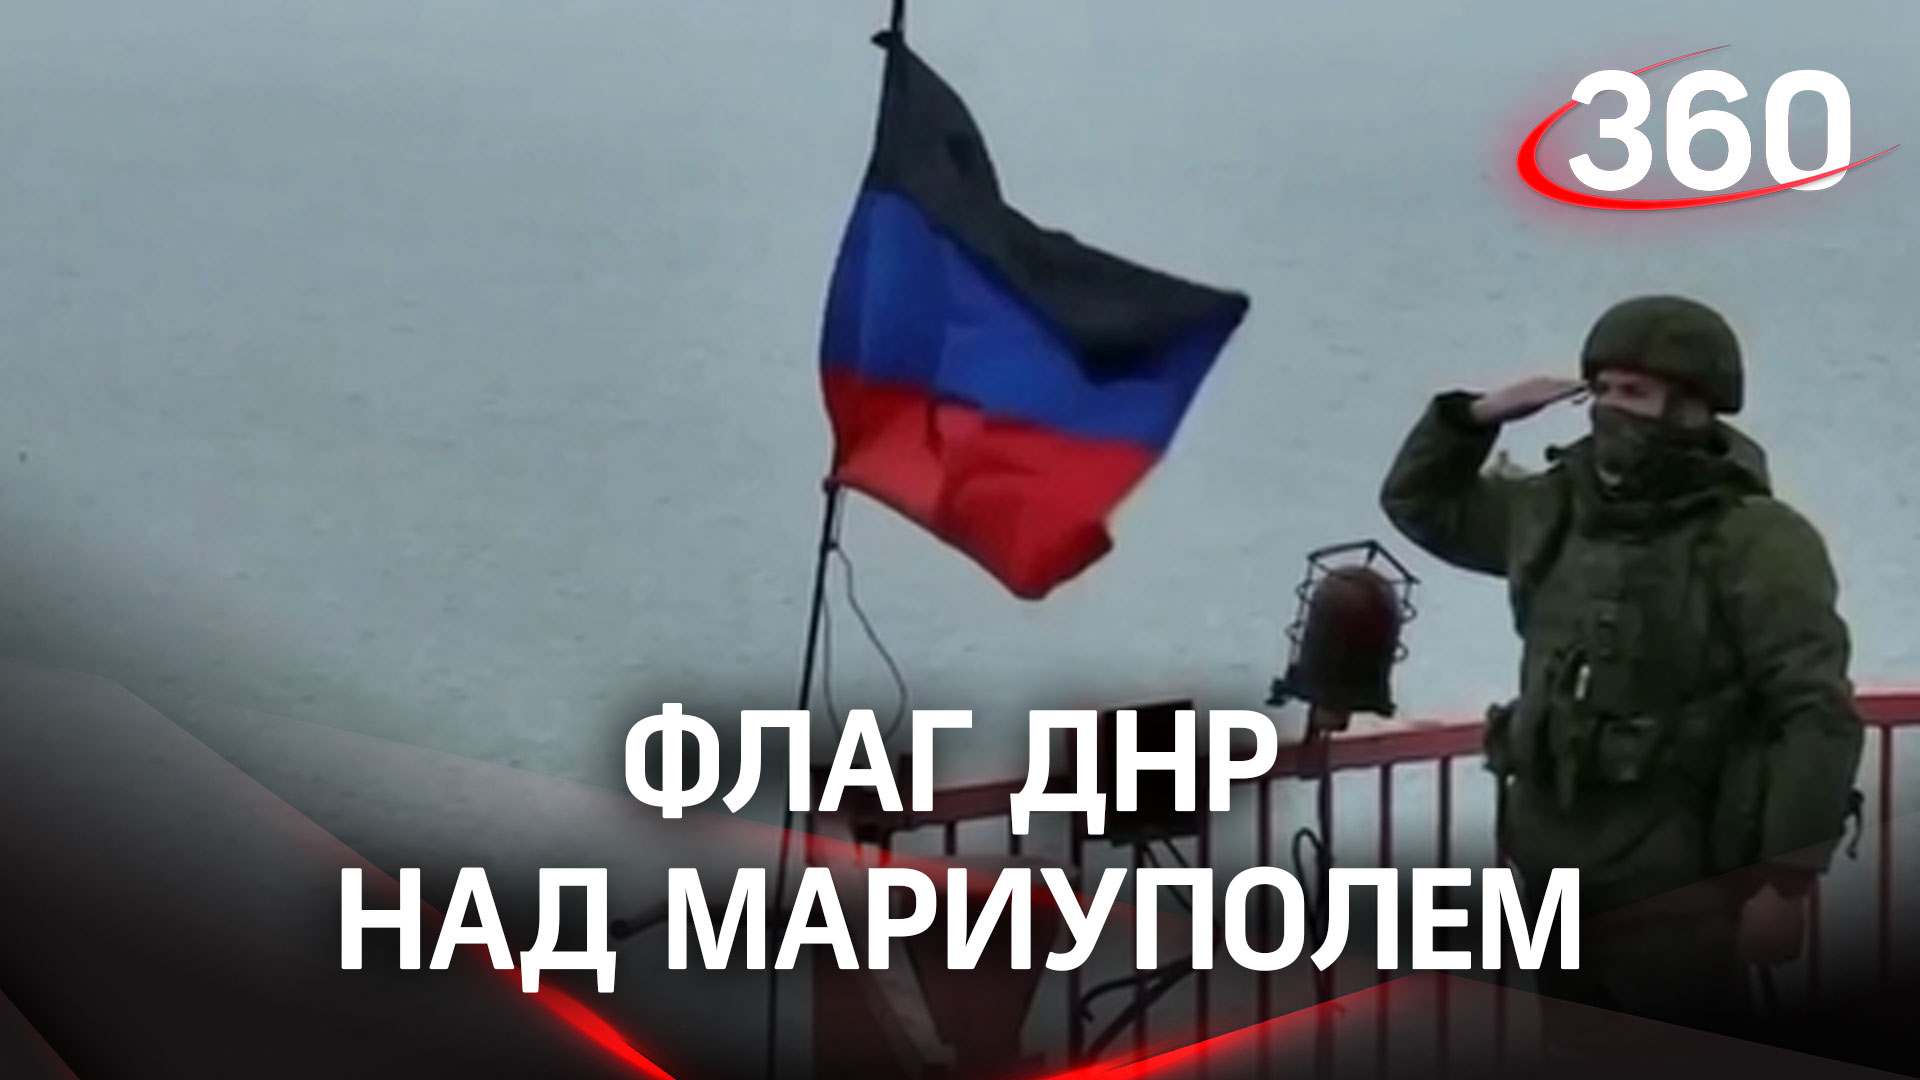 Флаг ДНР над Мариуполем: город зачищен от националистов - Кадыров